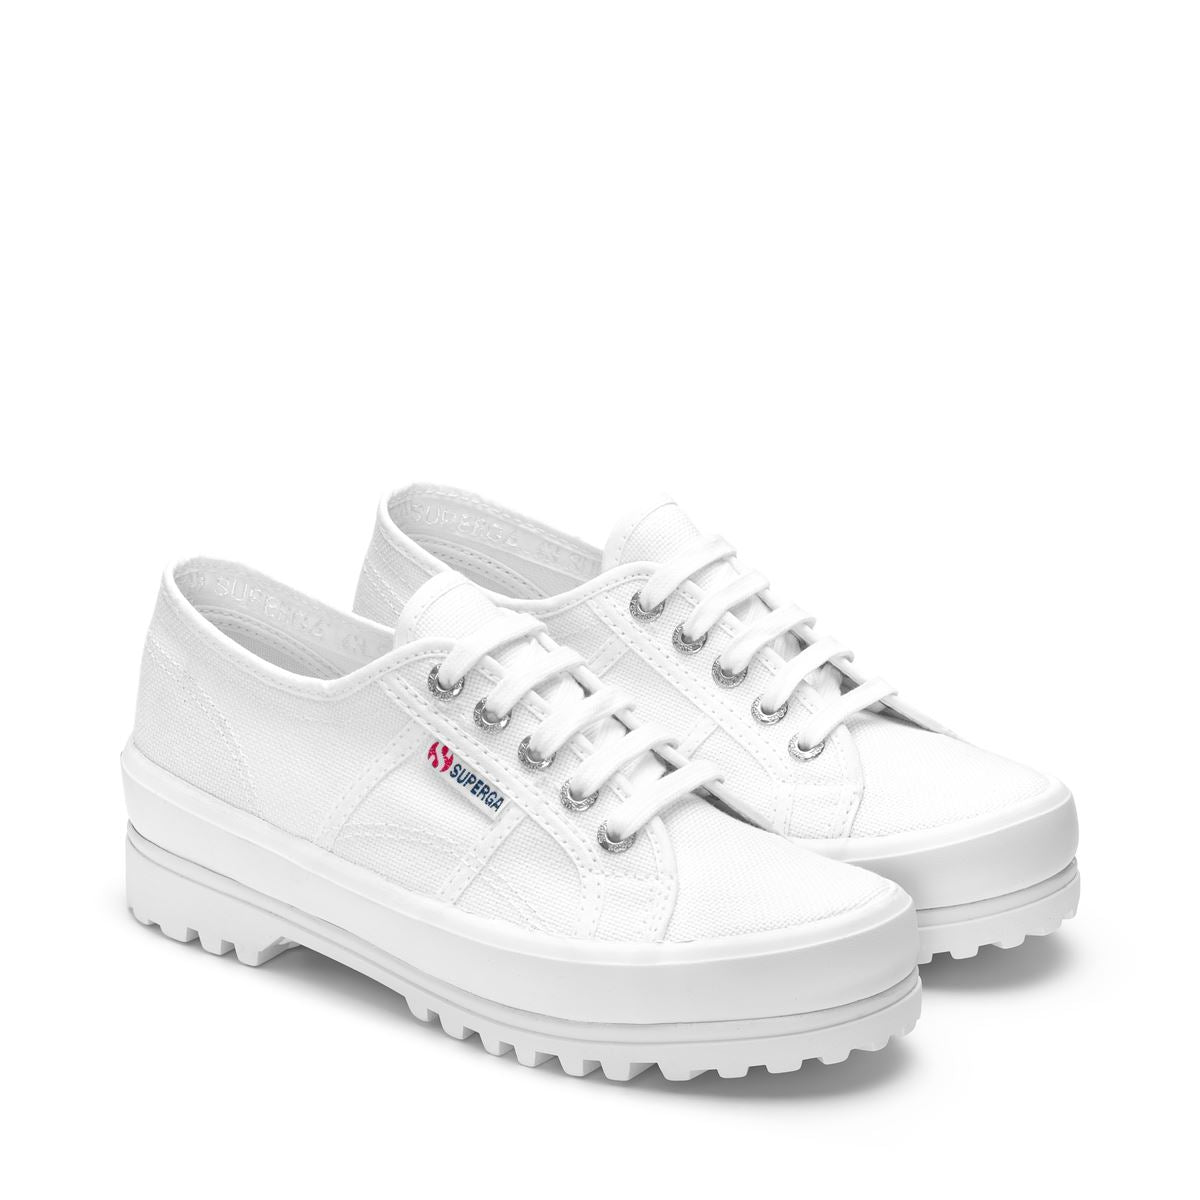 Zapatos Plataforma Blancas 2555-Cotu Alpina- Hover Image